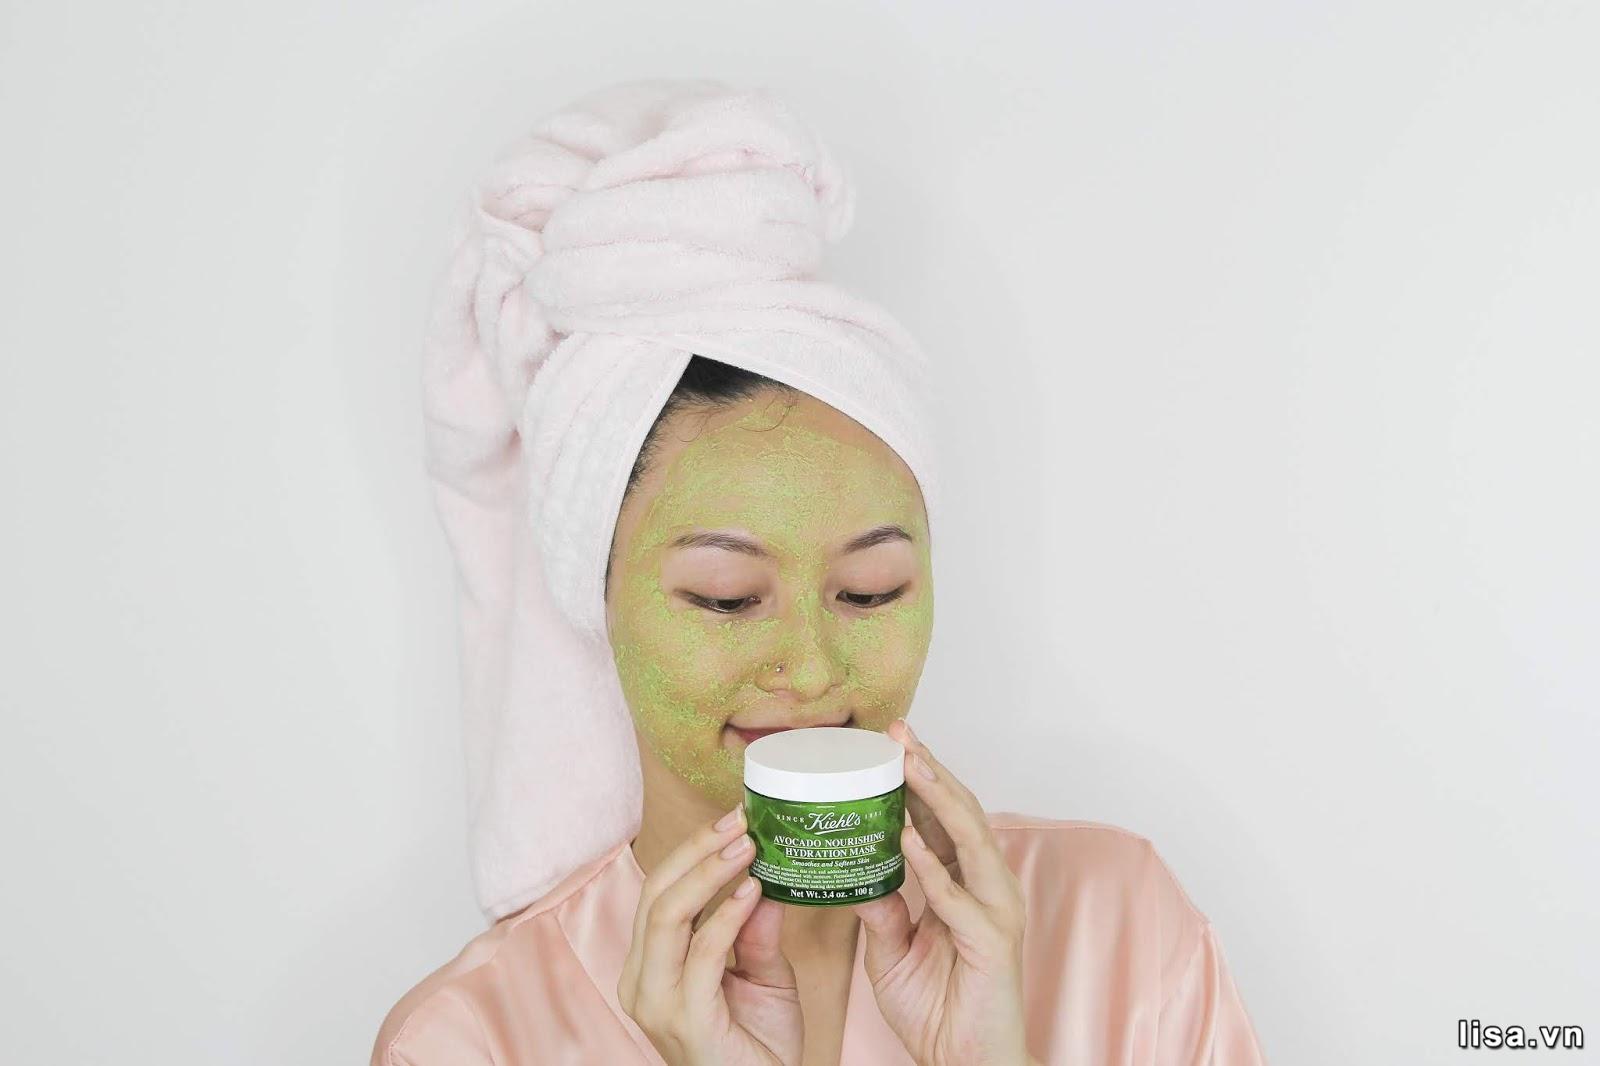 Mặt nạ Kiehl’s Avocado Nourishing Hydration Mask giúp bạn lấy lại làn da căng bóng, mịn màng 